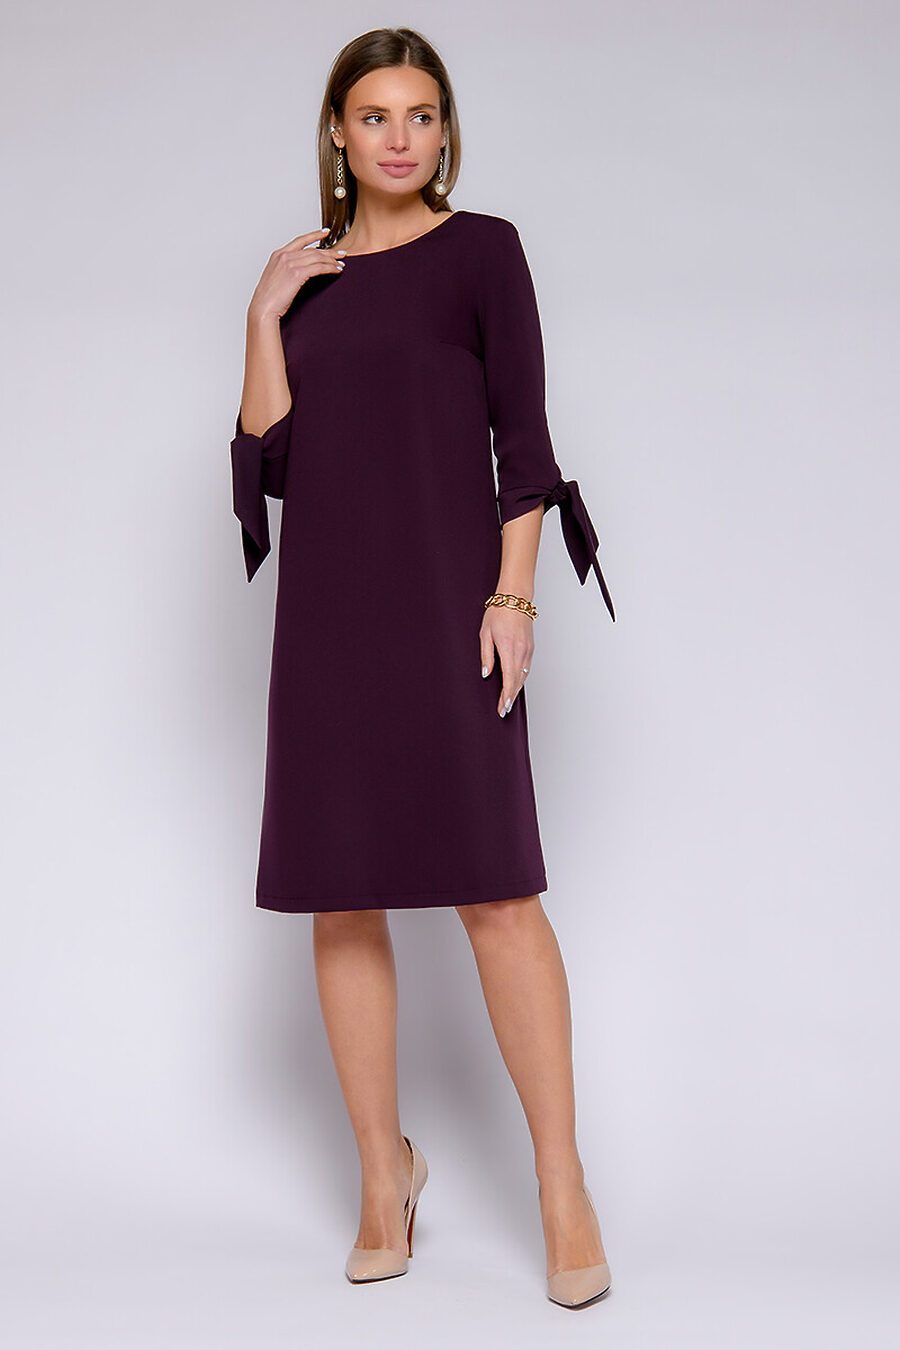 Платье для женщин 1001 DRESS 741173 купить оптом от производителя. Совместная покупка женской одежды в OptMoyo